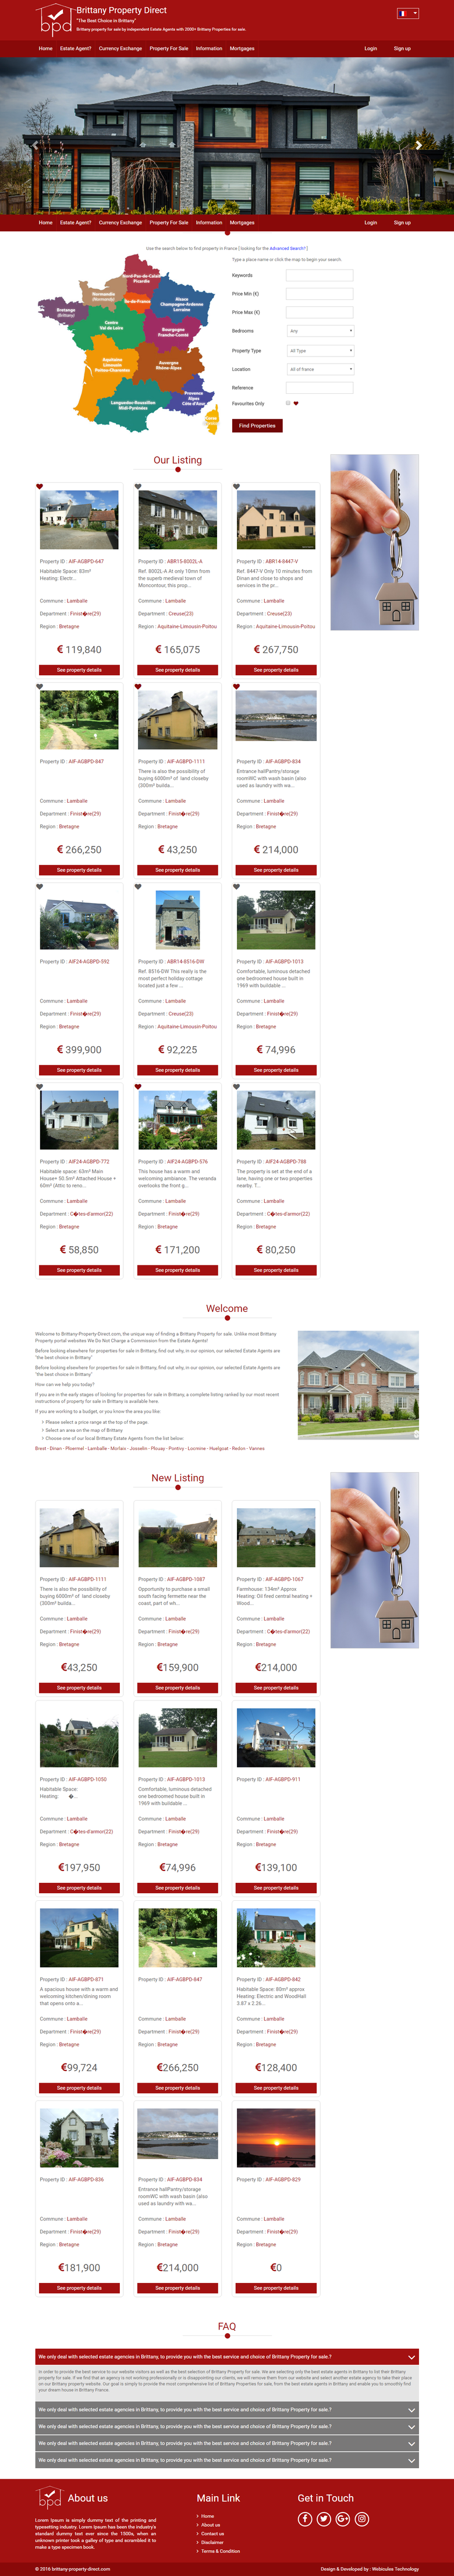 Real Estate Website | http://france-property-direct.com/dev/